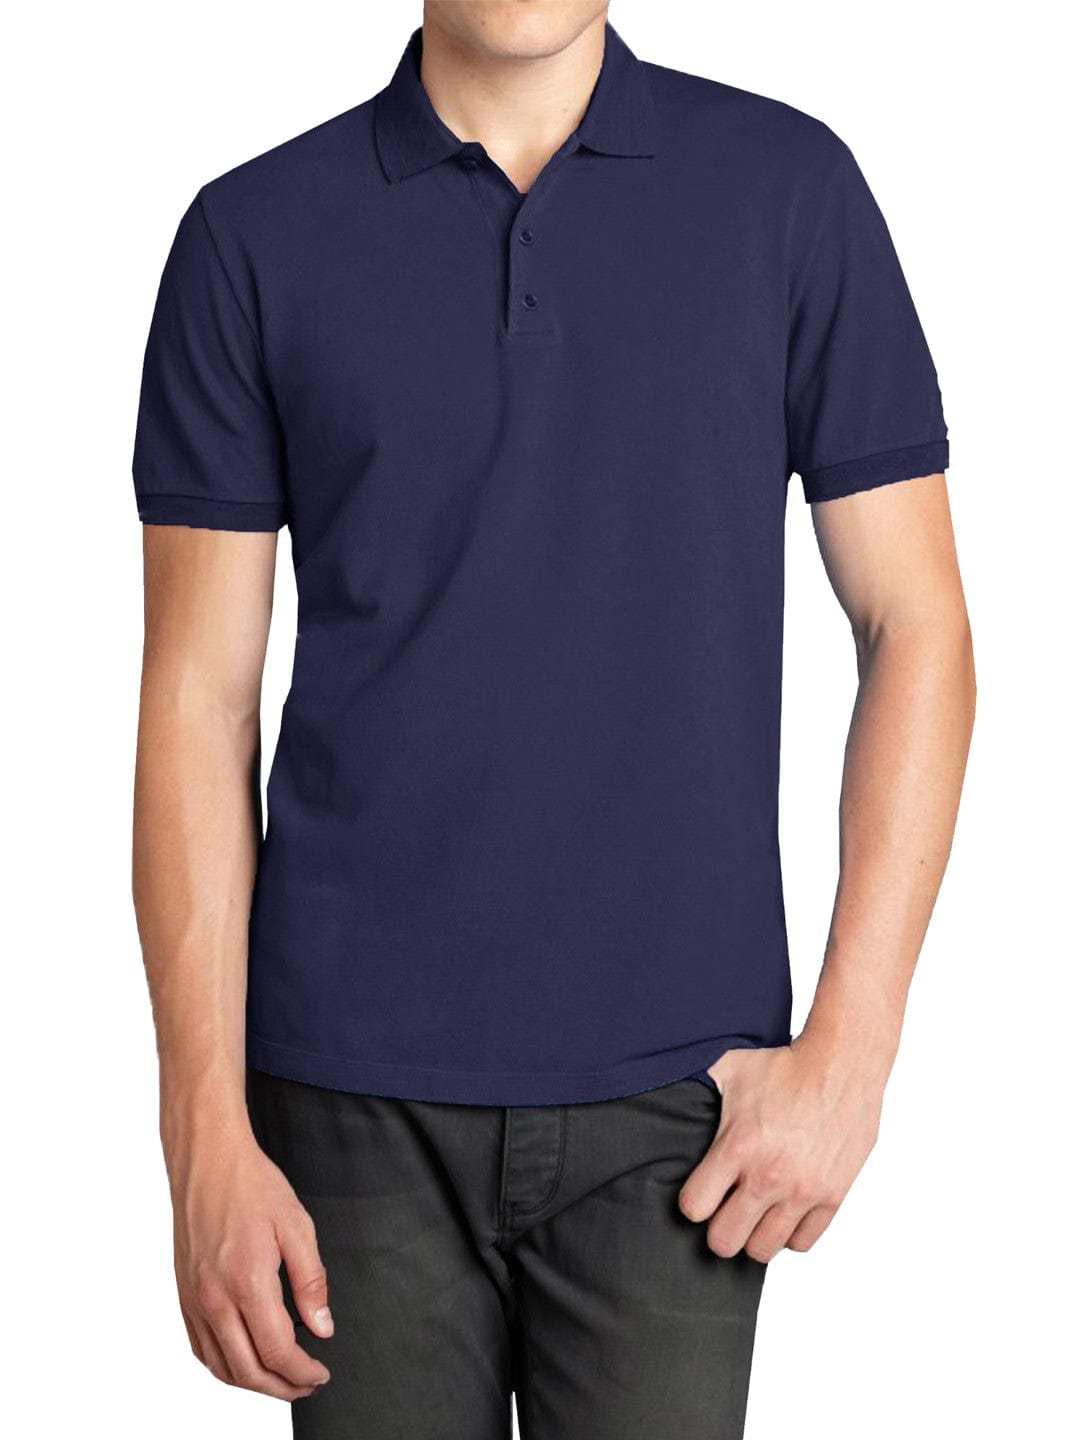 Galaxy by Harvic Short Sleeve Men's Pique Polo Shirt